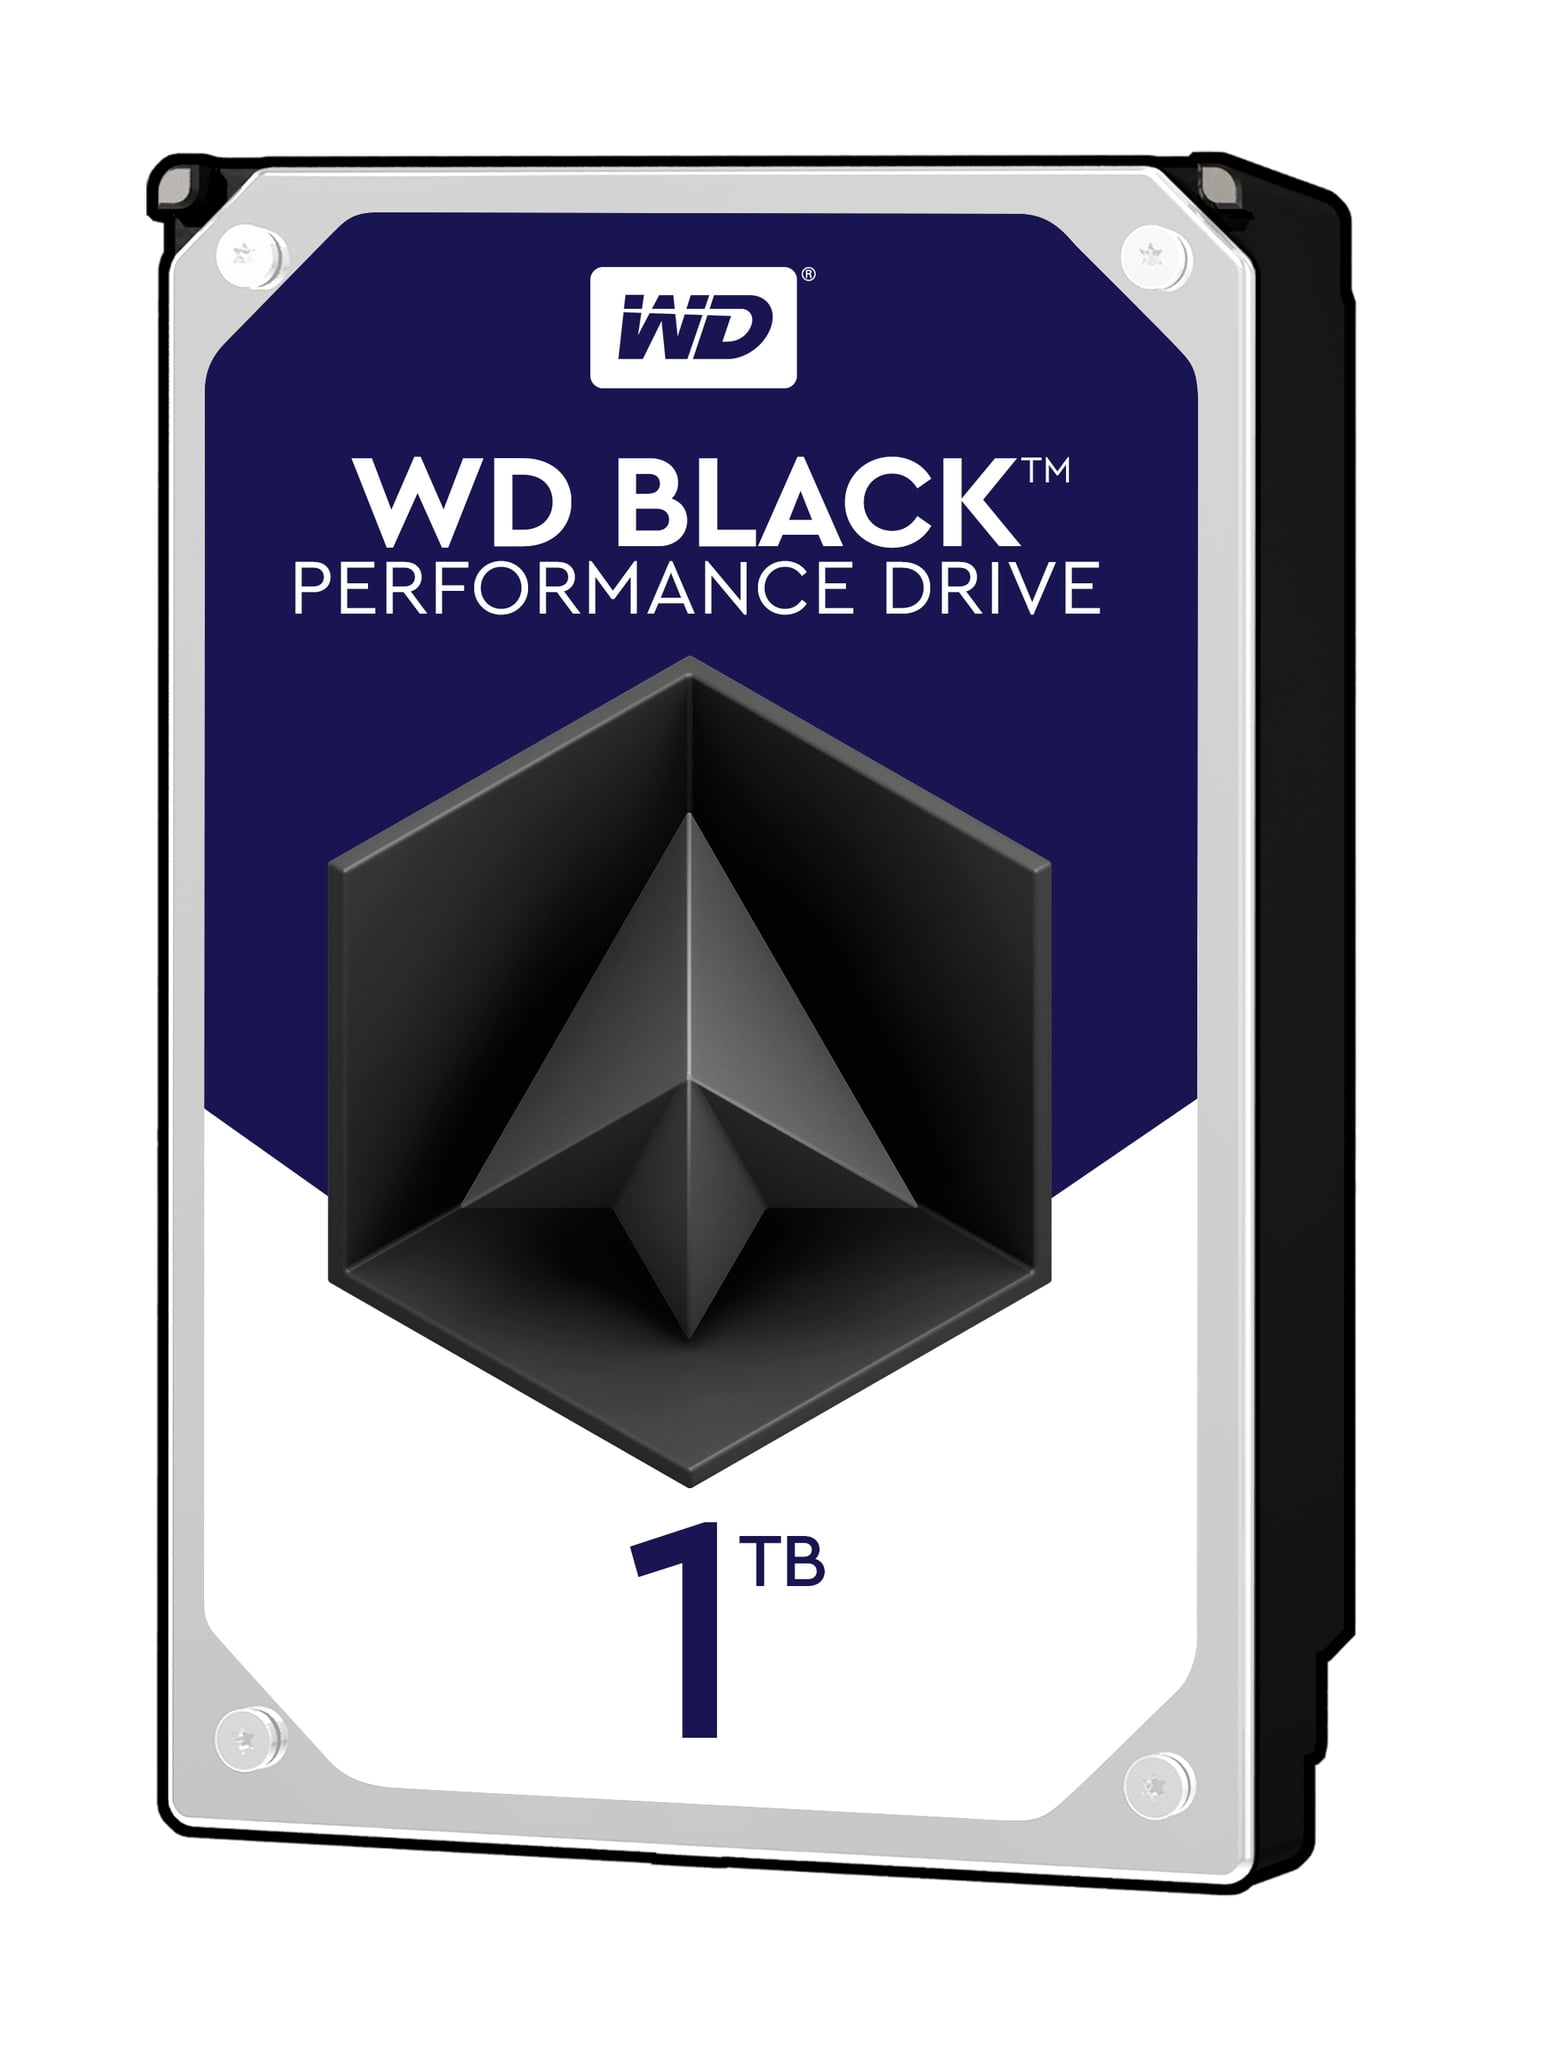 Wd Black 1tb Performance Desktop Hard Disk Drive 70 Rpm Sata 6 Gb S 32mb Cache 3 5 Inch Wd1003fzex Walmart Com Walmart Com